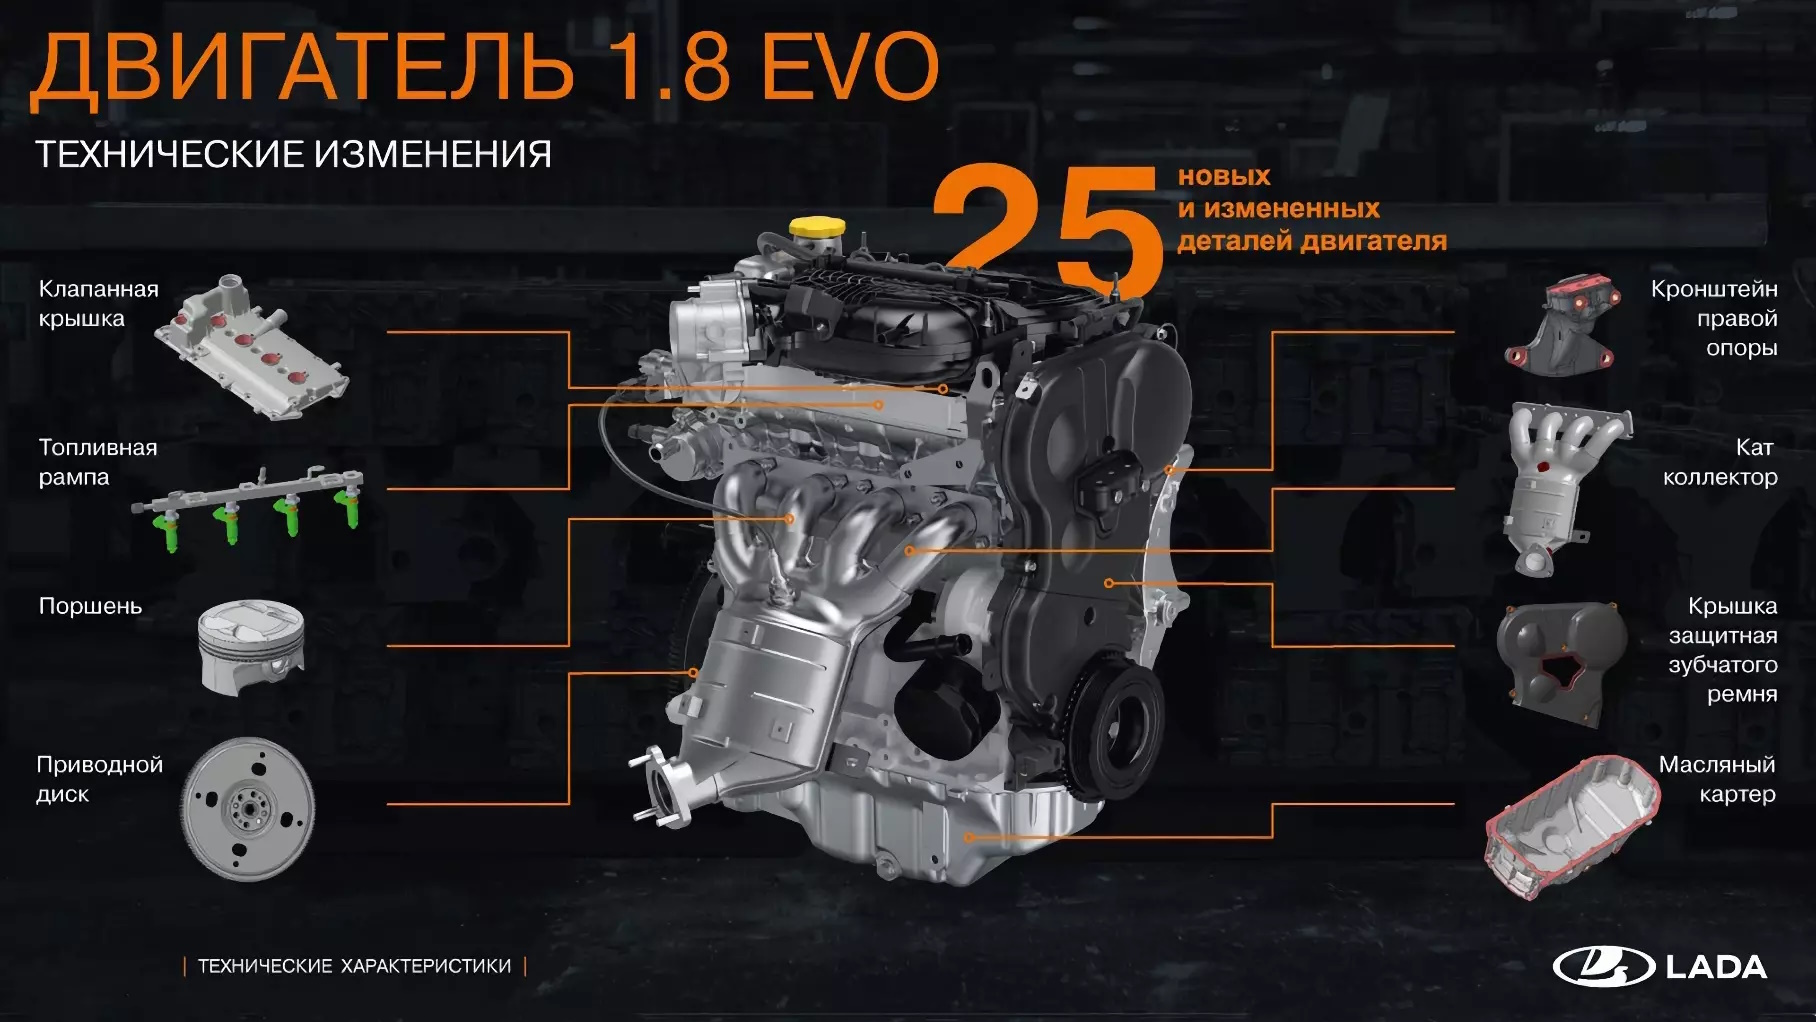 Что нового в двигателе 1.8 Evo по сравнению со старой версией